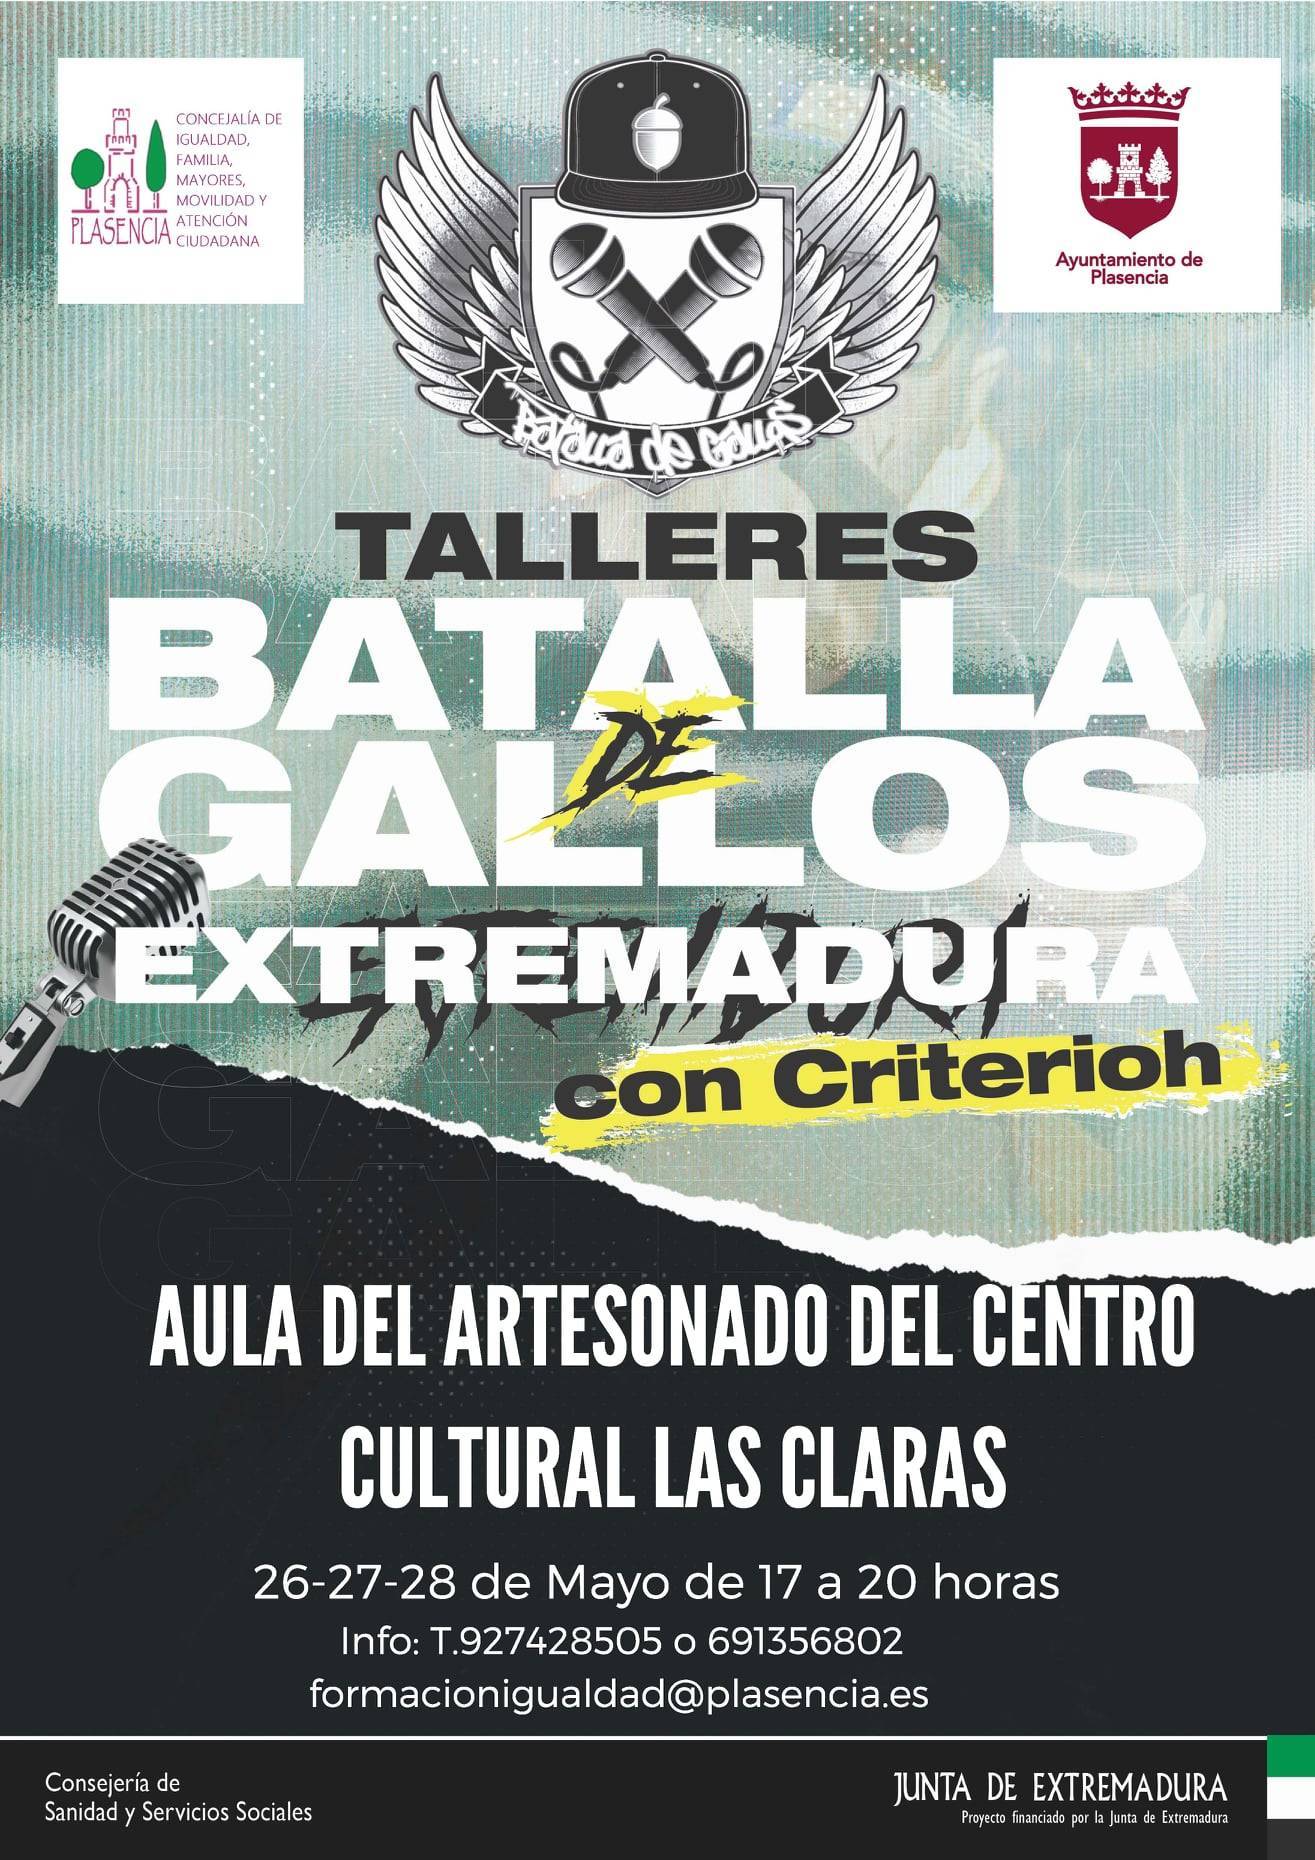 Taller de batallas de gallos (2021) - Plasencia (Cáceres)